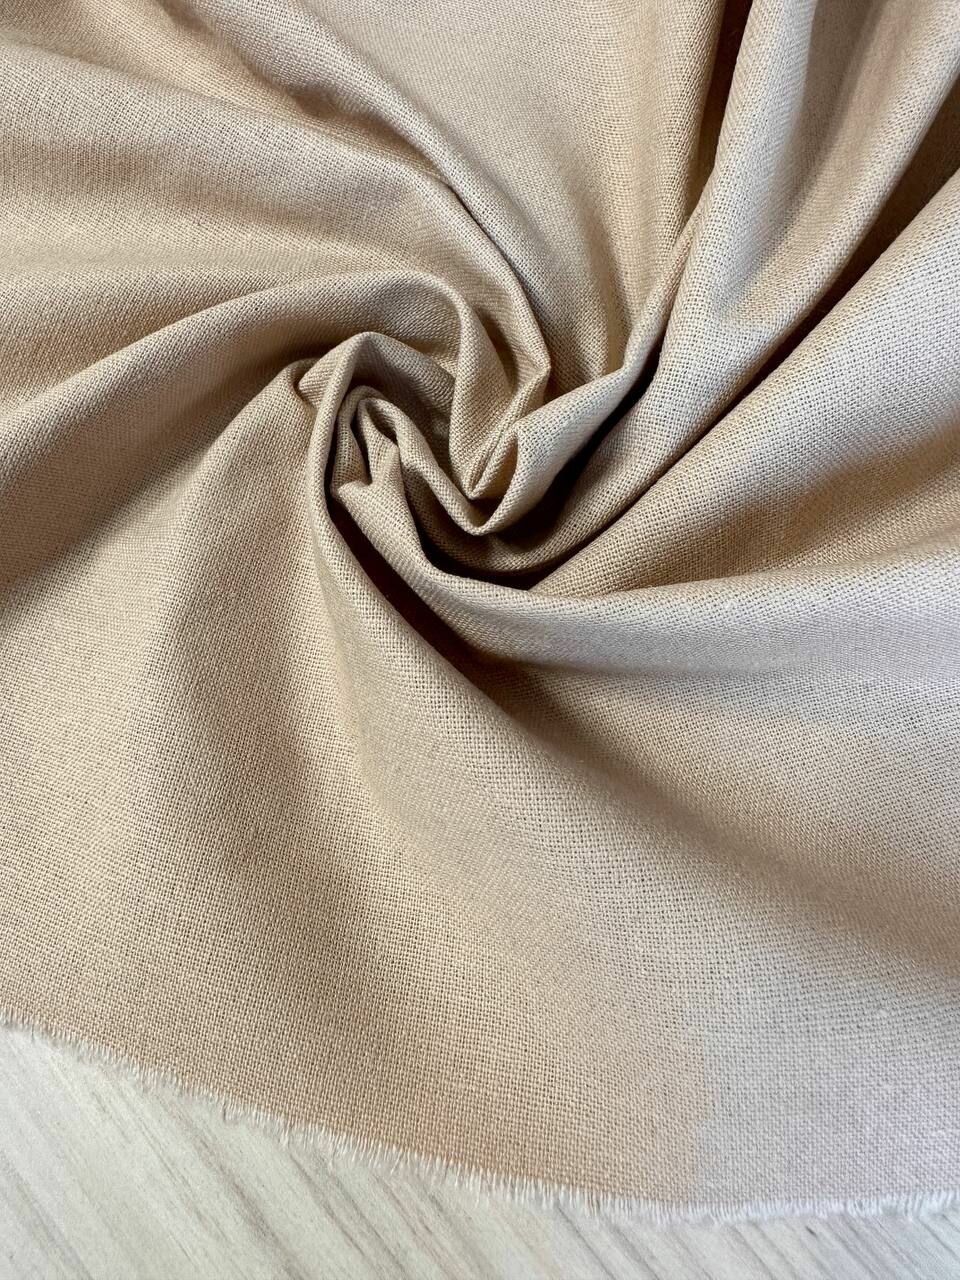 2 м. Лен ткань для шитья одежды, песочный цвет. Полулен. Отрез 200х150см.